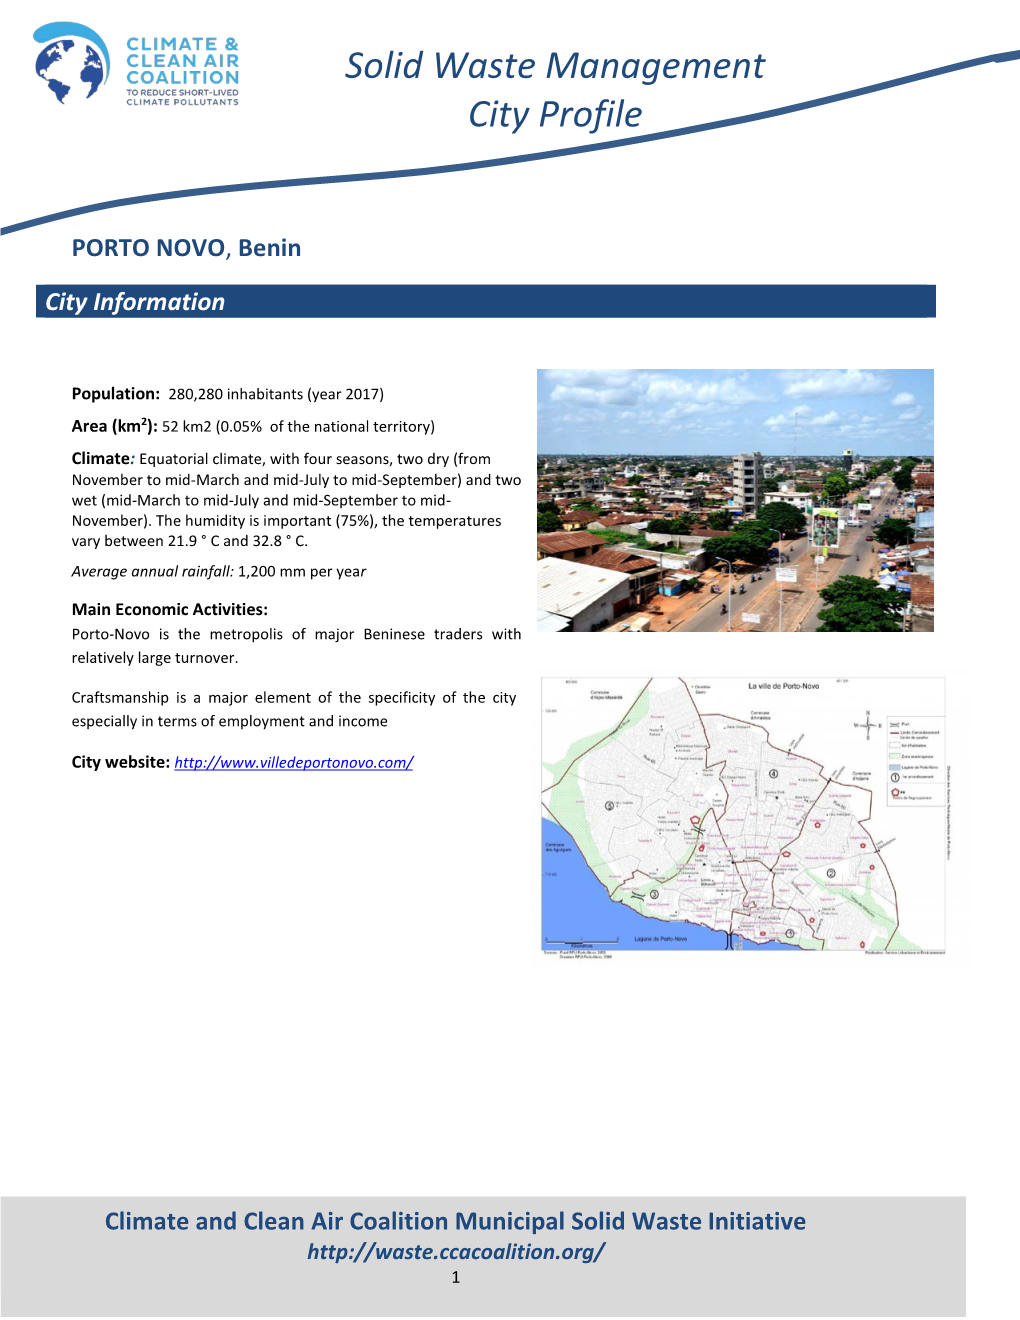 PORTO NOVO, Benin City Information